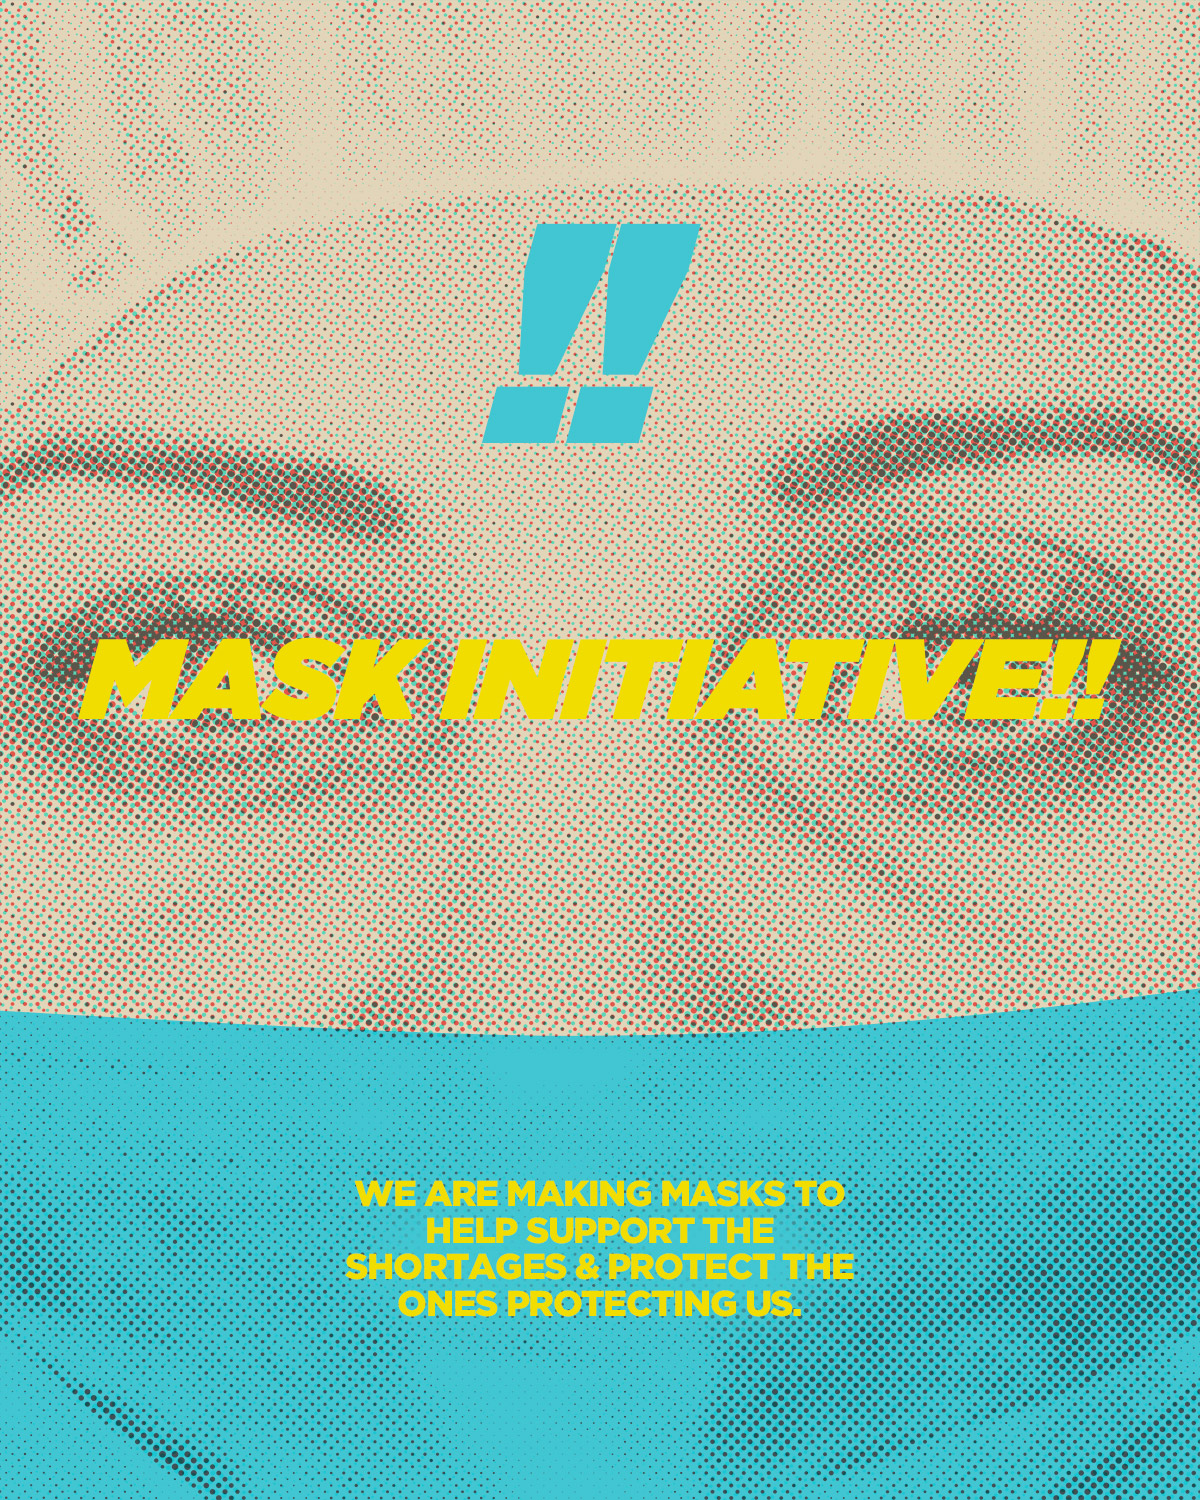 Mask Initiative